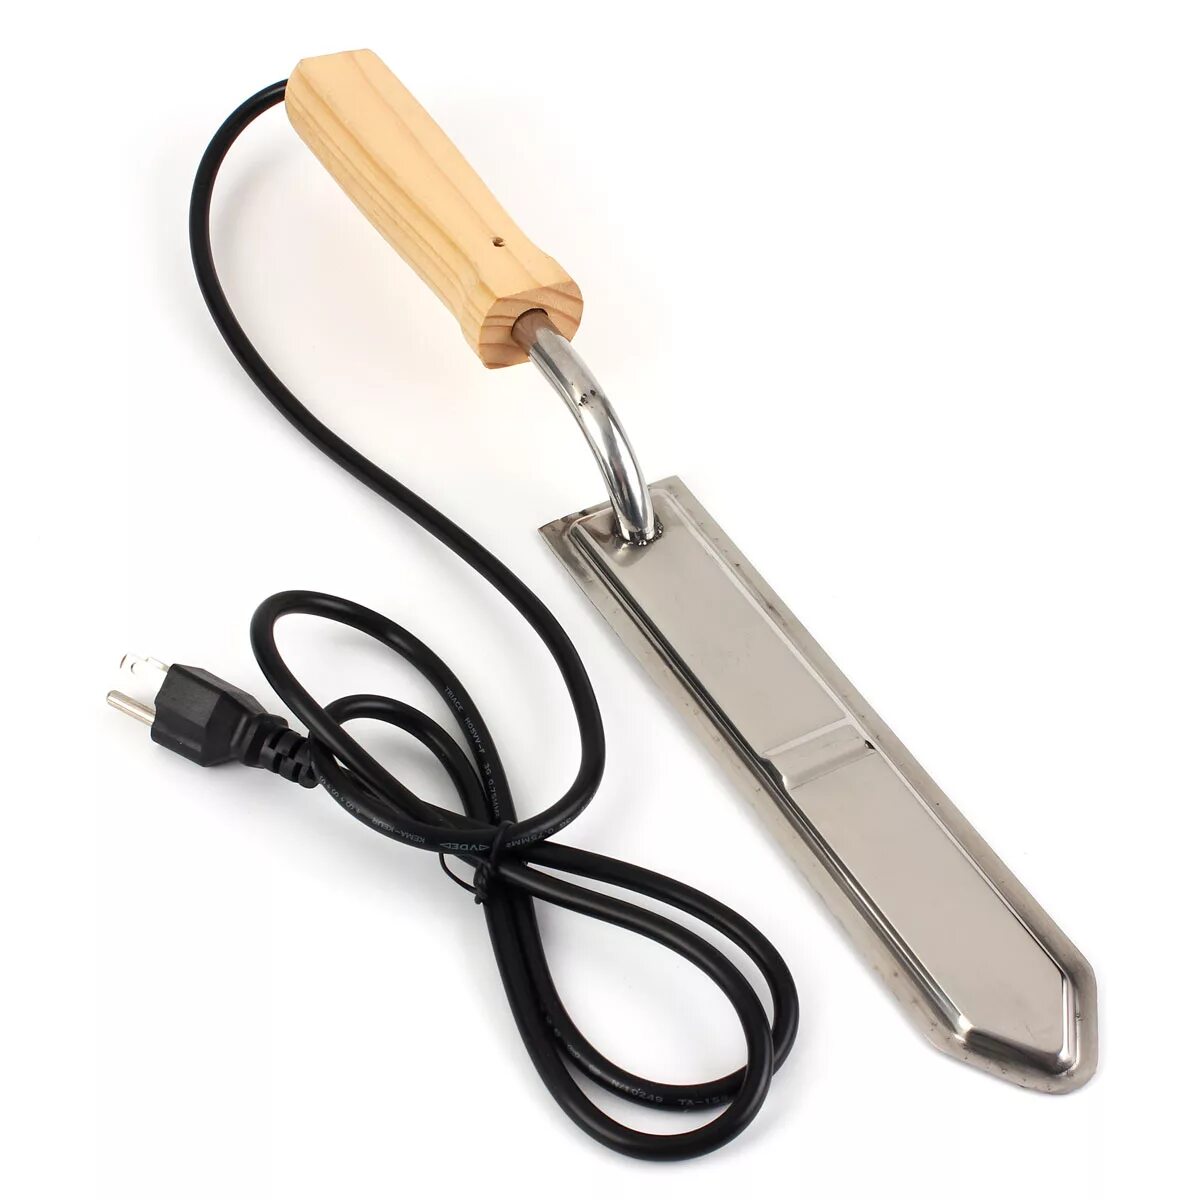 Нож электро. Нож пасечный электрический Beeprofi 220 v 150вт. Нож пасечный Honey-l285-Wave волна. Пасечный нож электрический для распечатки сот электронож 12в. Нож пасечный электрический для распечатки сотов нержавейка 12.